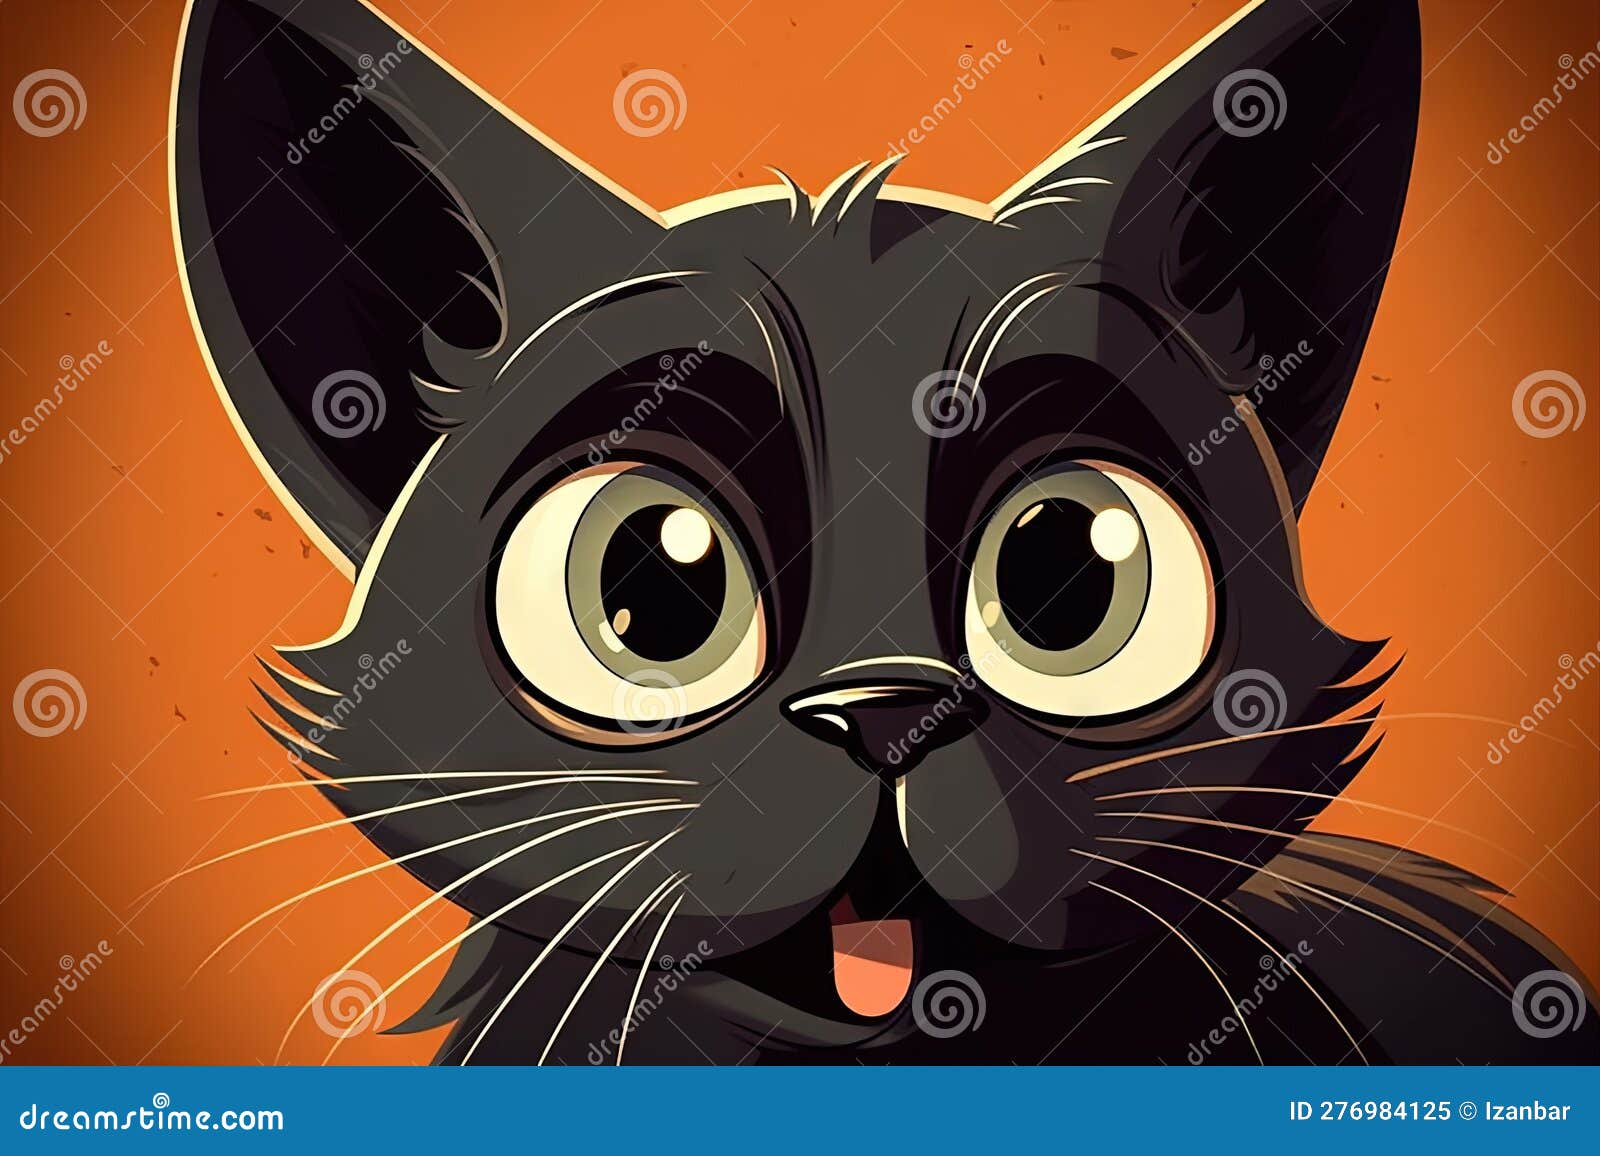 Ilustrações dos gatos mais famosos dos desenhos animados!